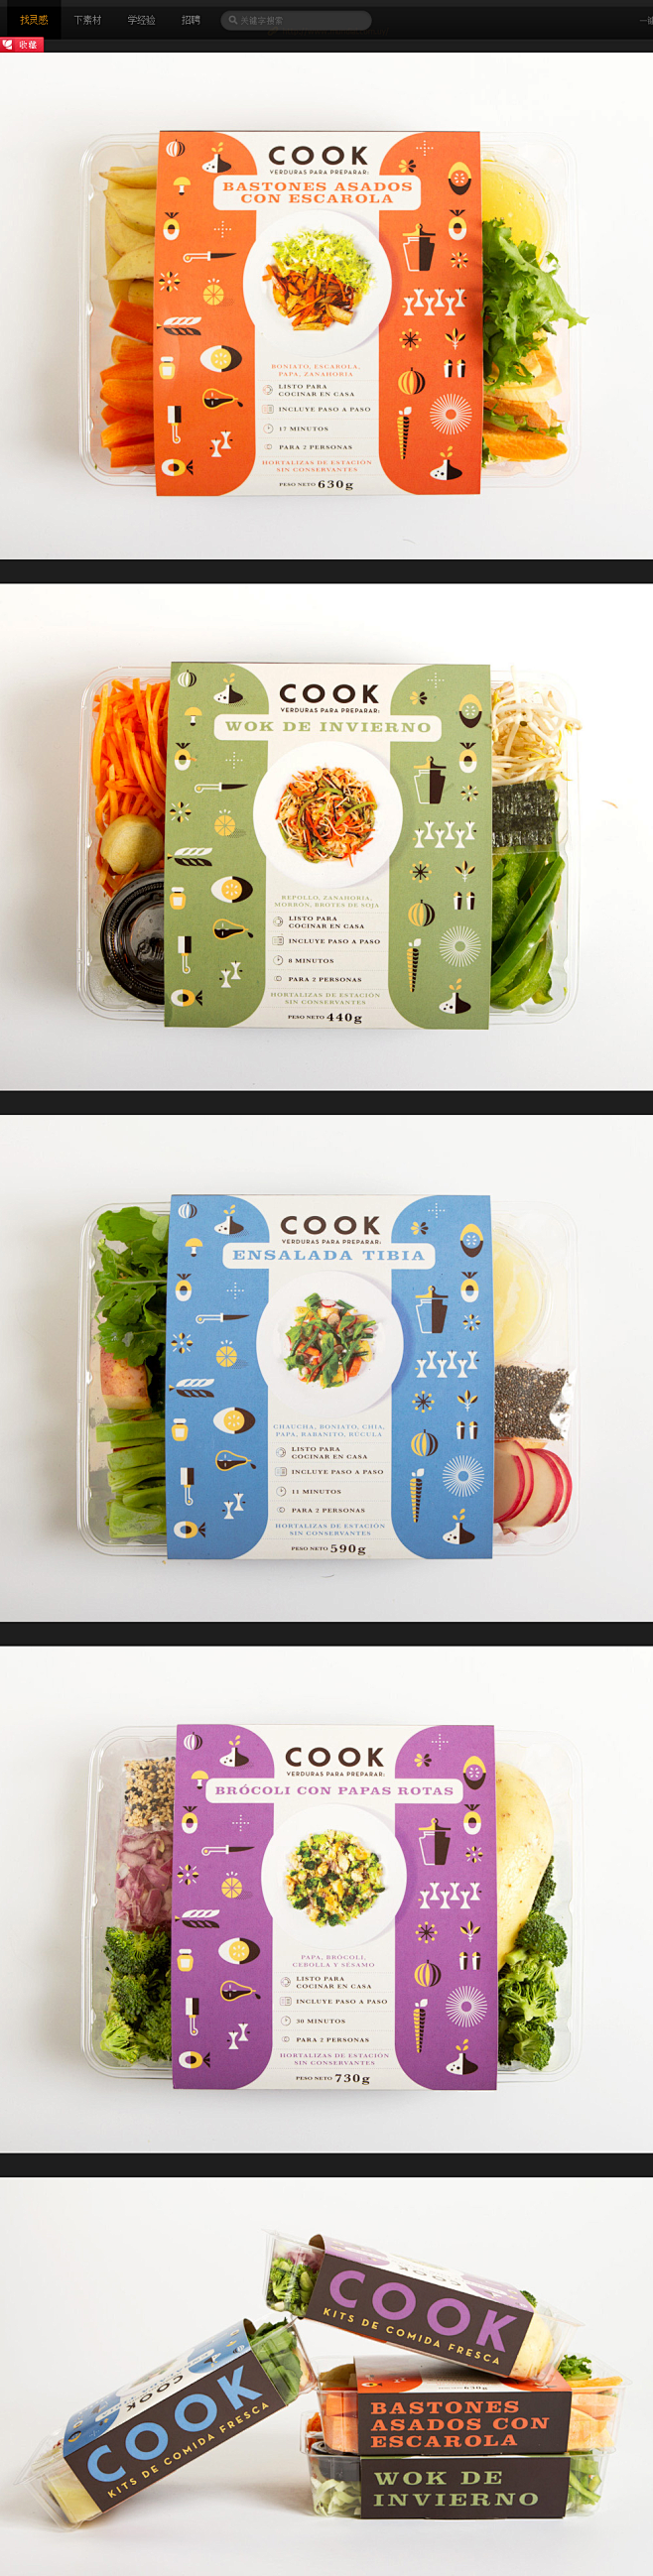 COOK食品包装设计 - 平面设计 - ...